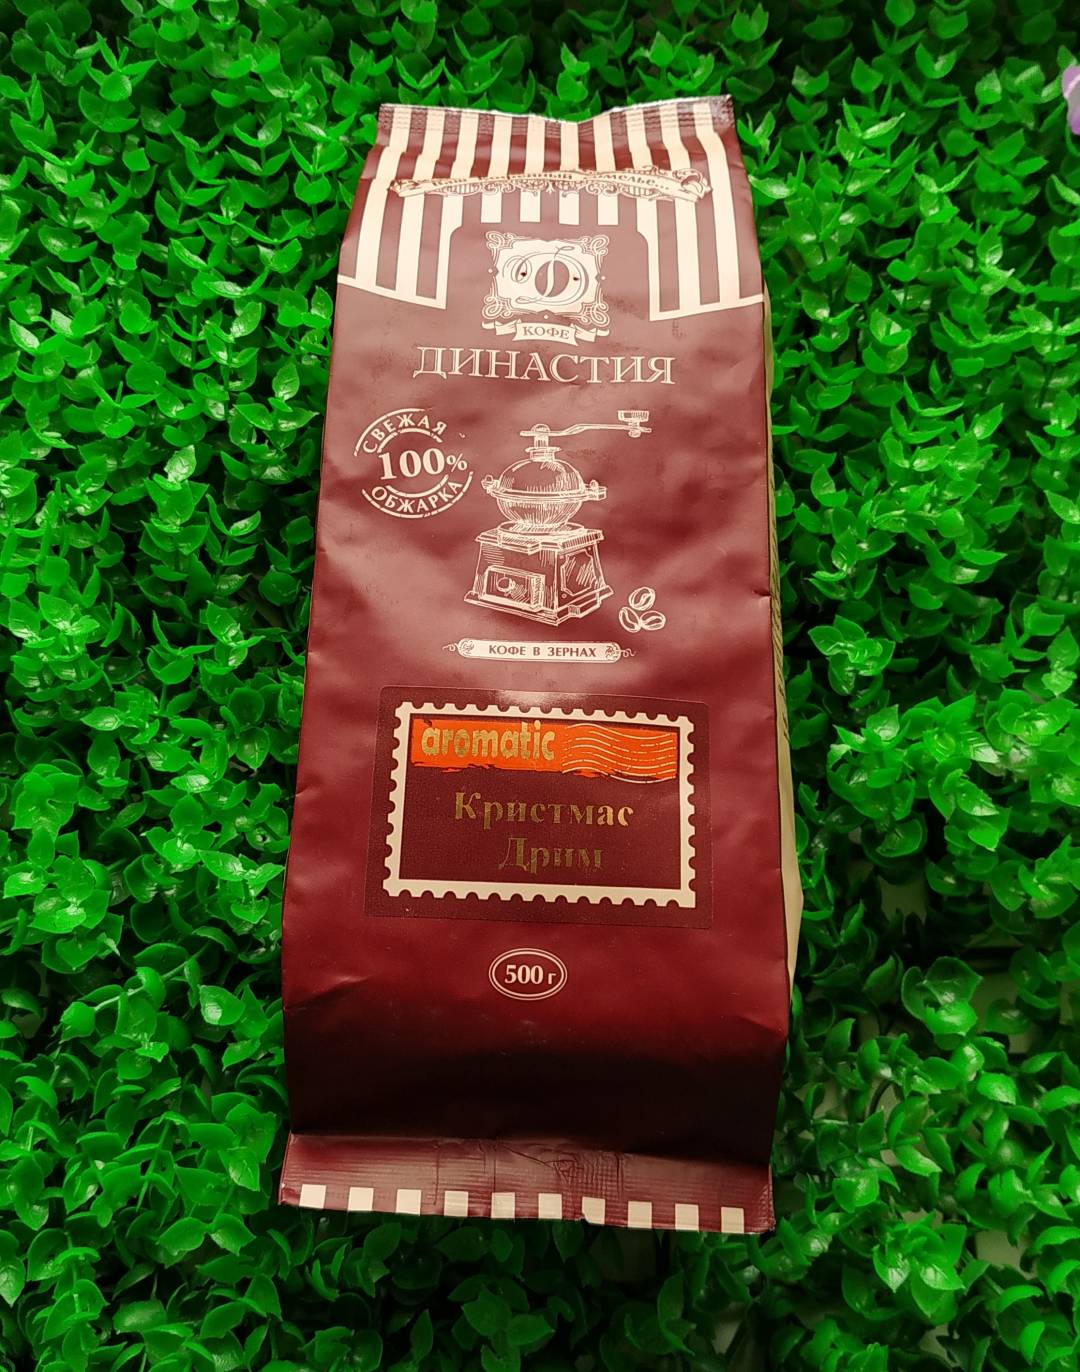 Купить онлайн Кофе Кристмас Дрим в зернах в интернет-магазине Беришка с доставкой по Хабаровску и по России недорого.